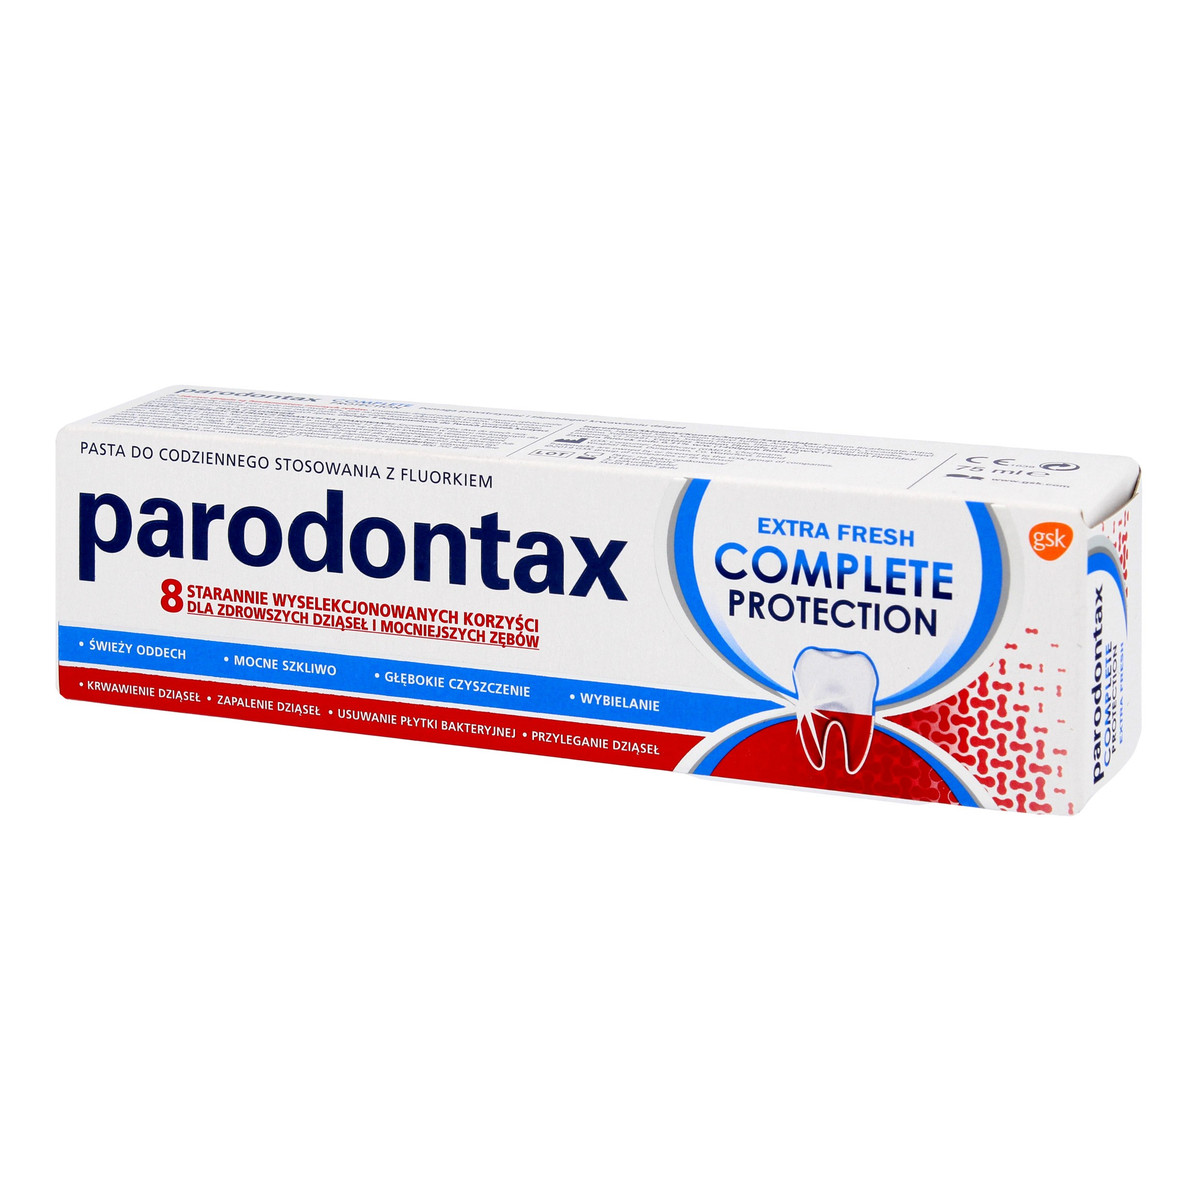 GSK Parodontax pasta do zębów complete protection extra fresh- 75ml